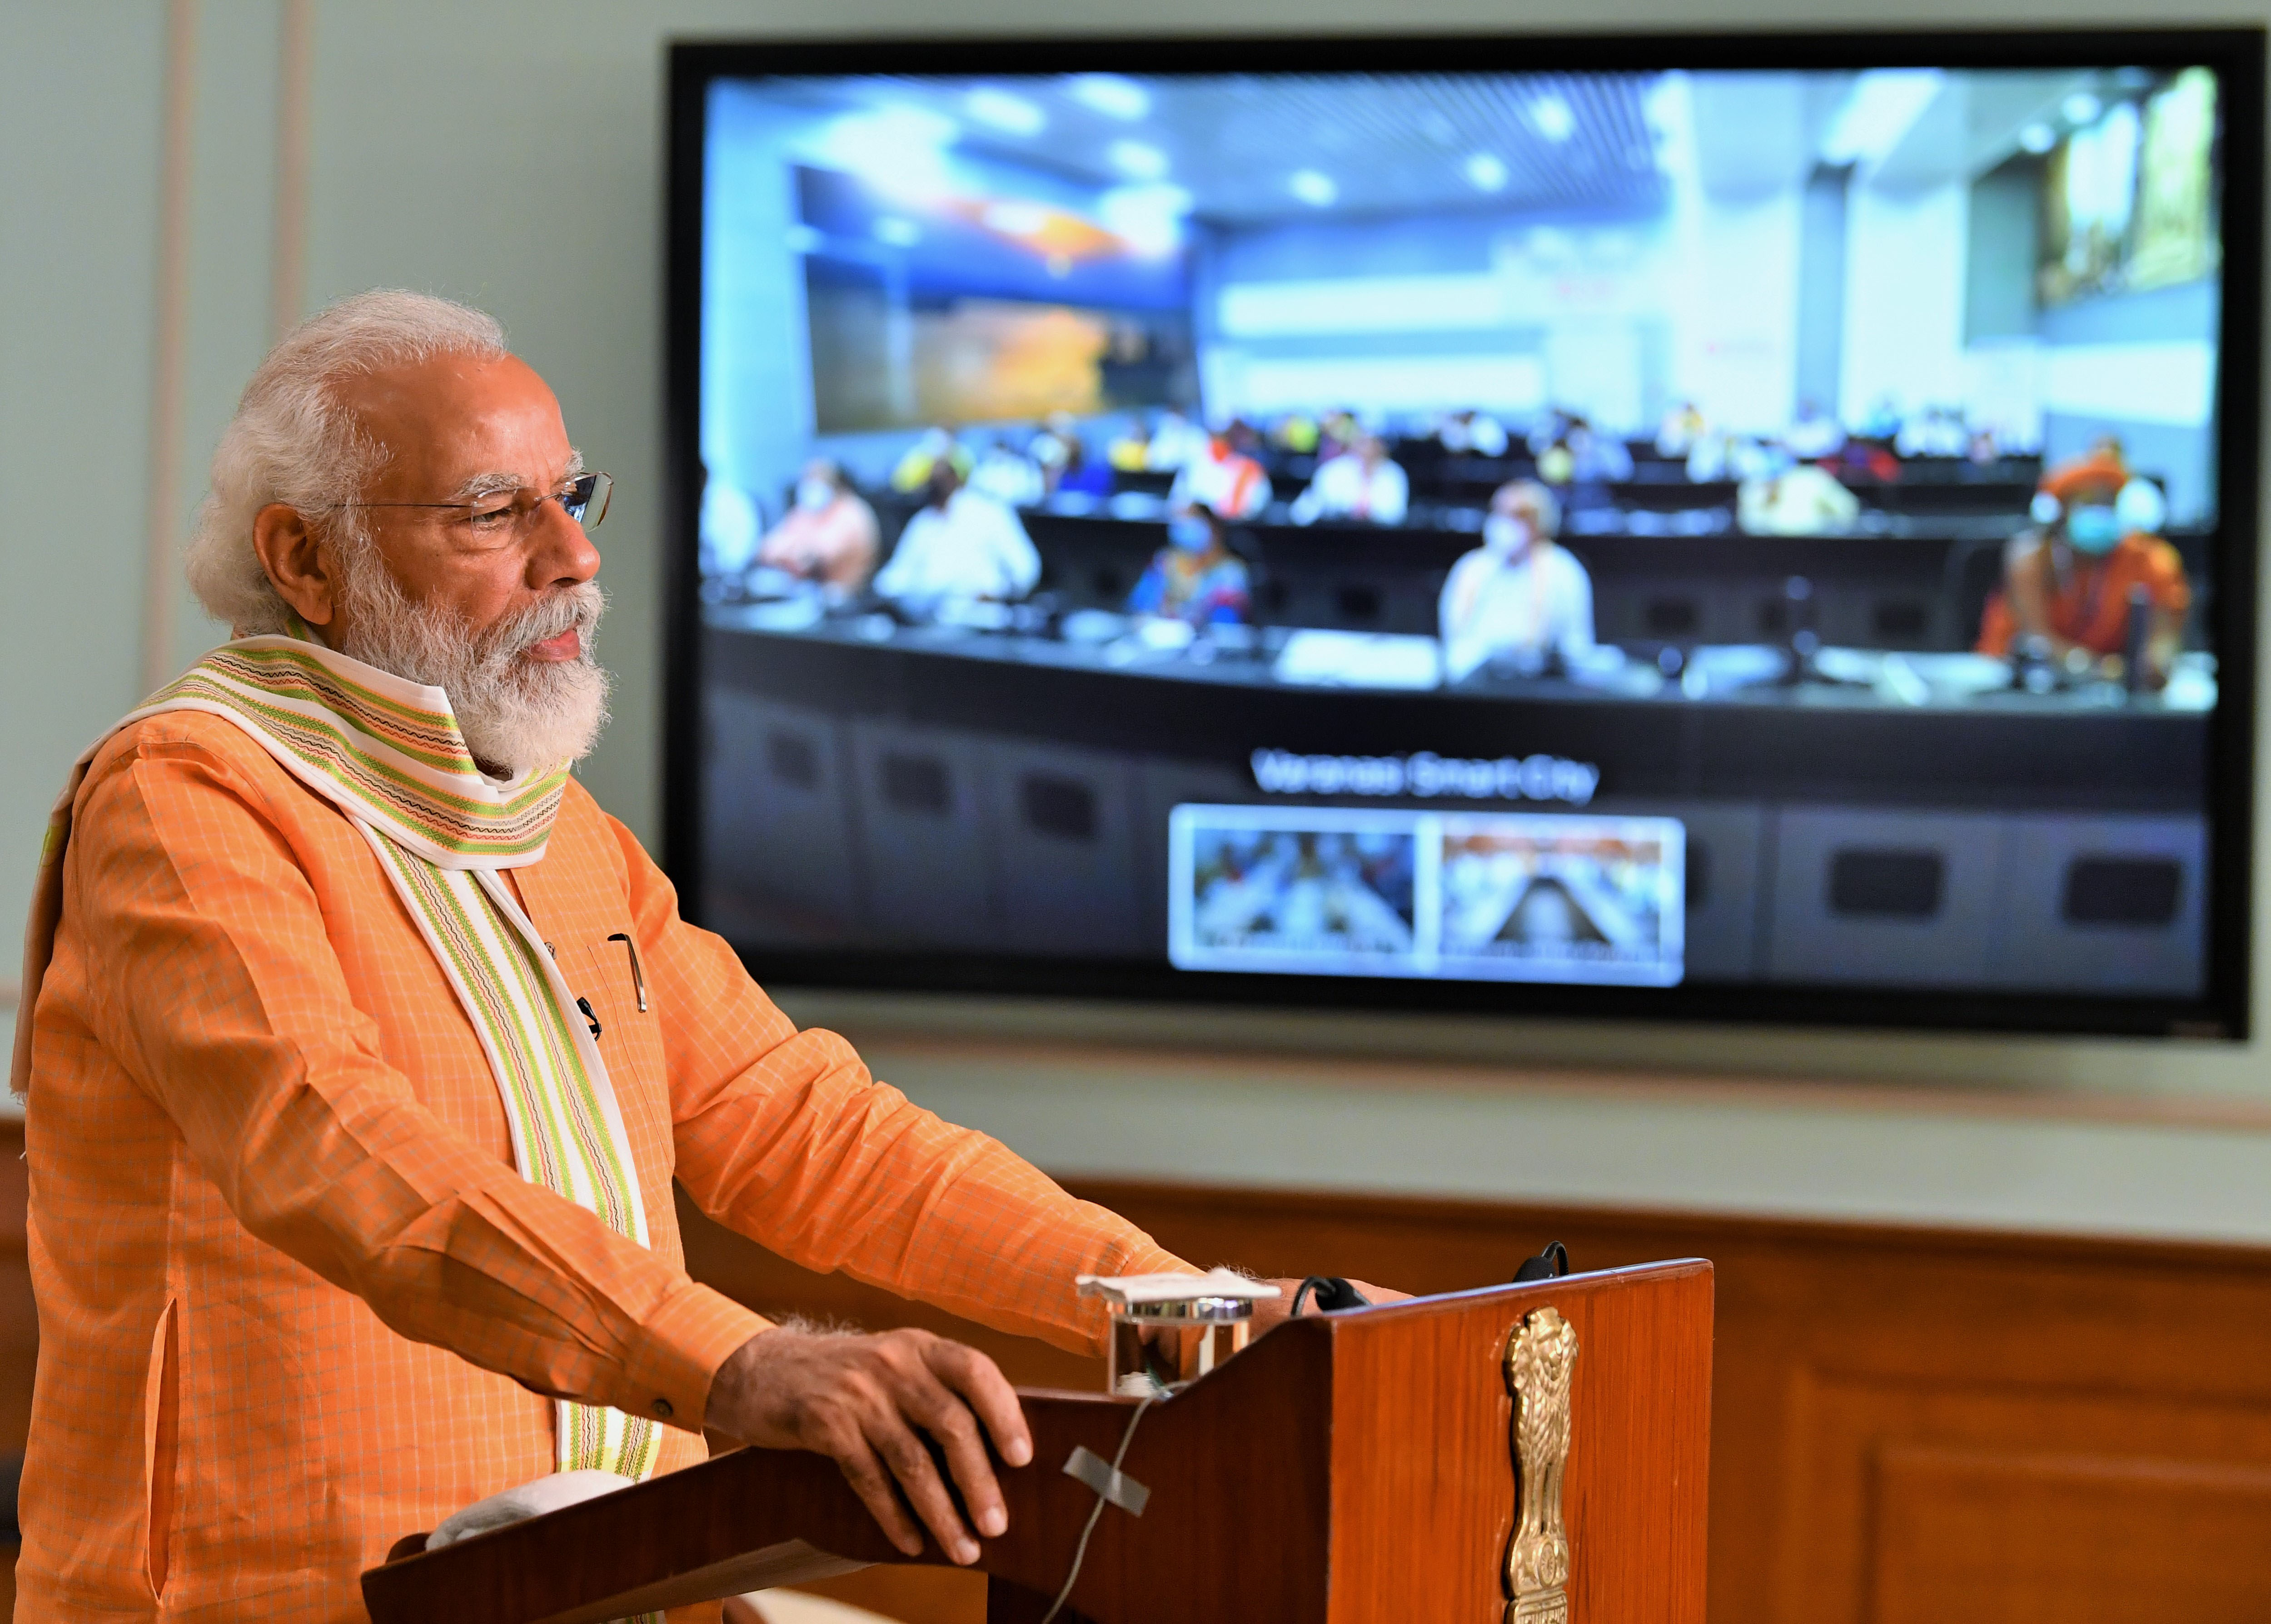 PM Modi appreciates efforts of Centre decoding=